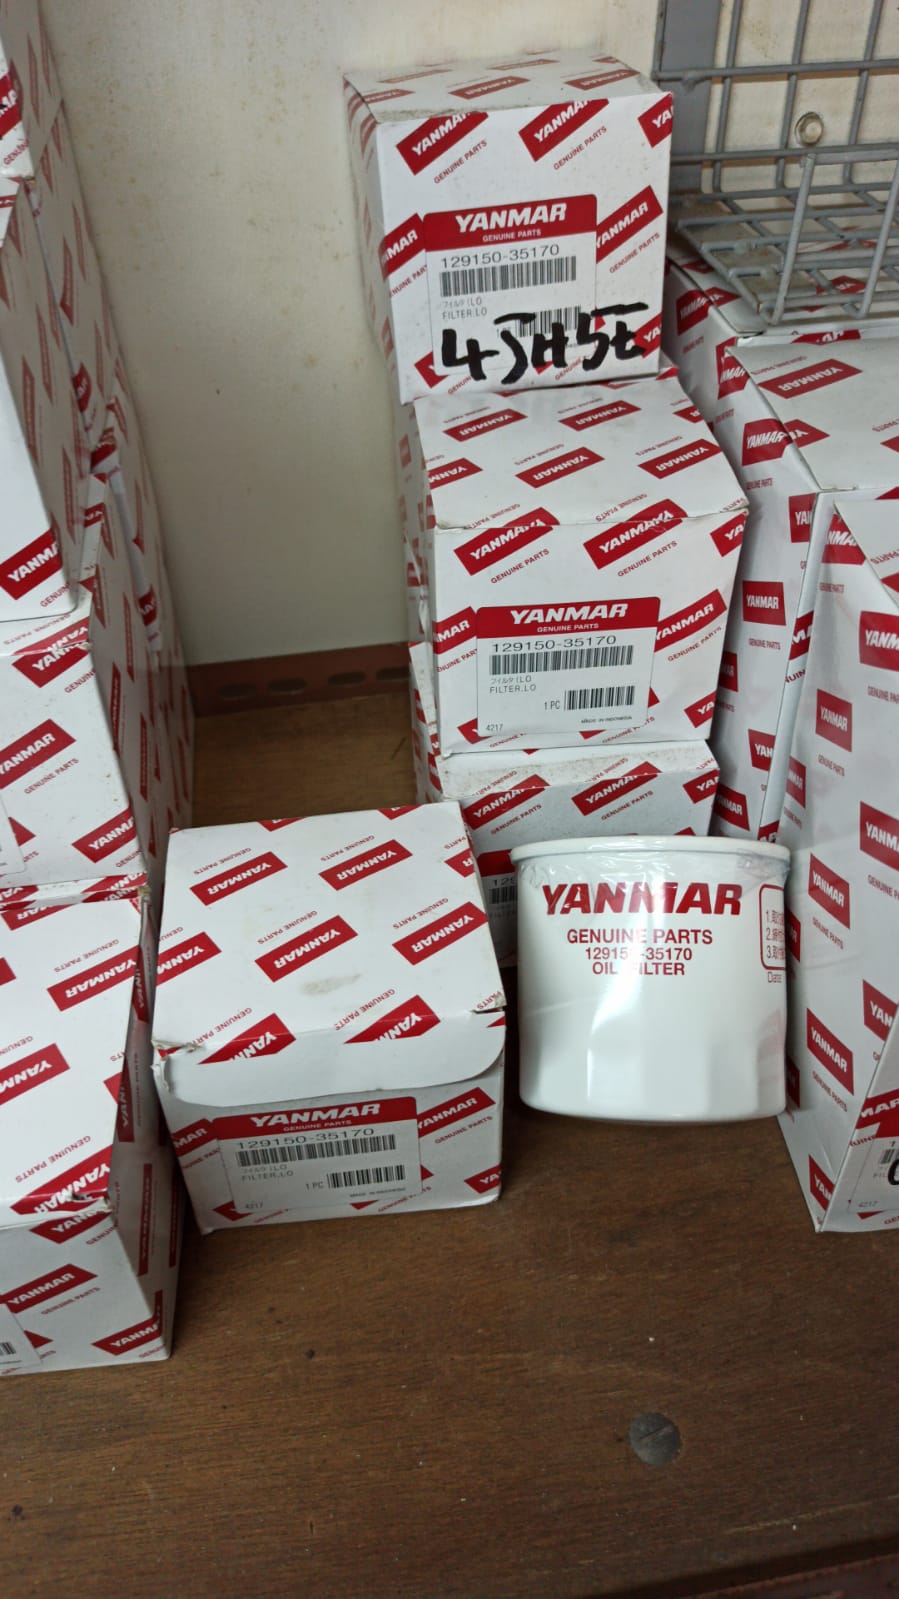 Yanmar oil Filter - 127695-35170